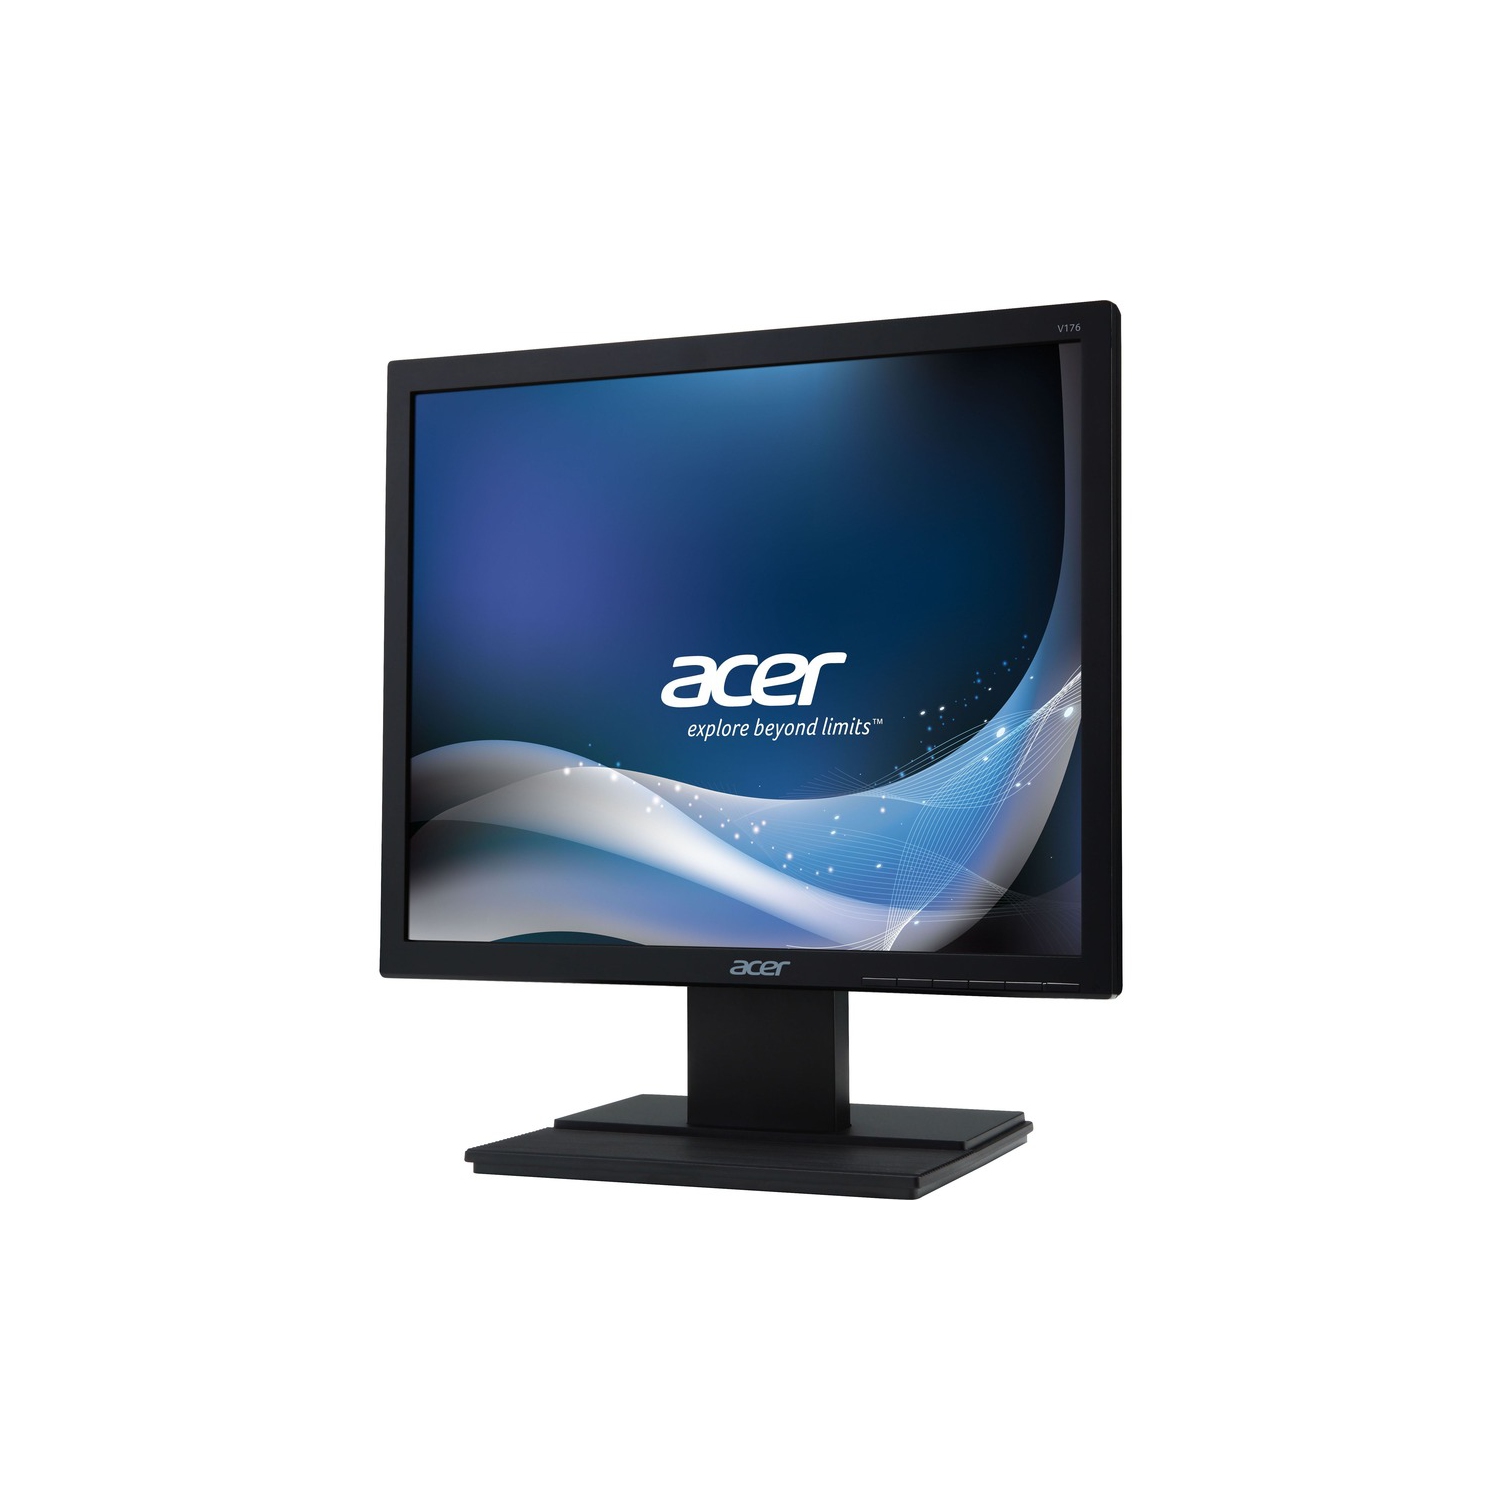 Acer V176l 17 Led Lcd Monitor - 5:4 - 5 Ms - Adjustable